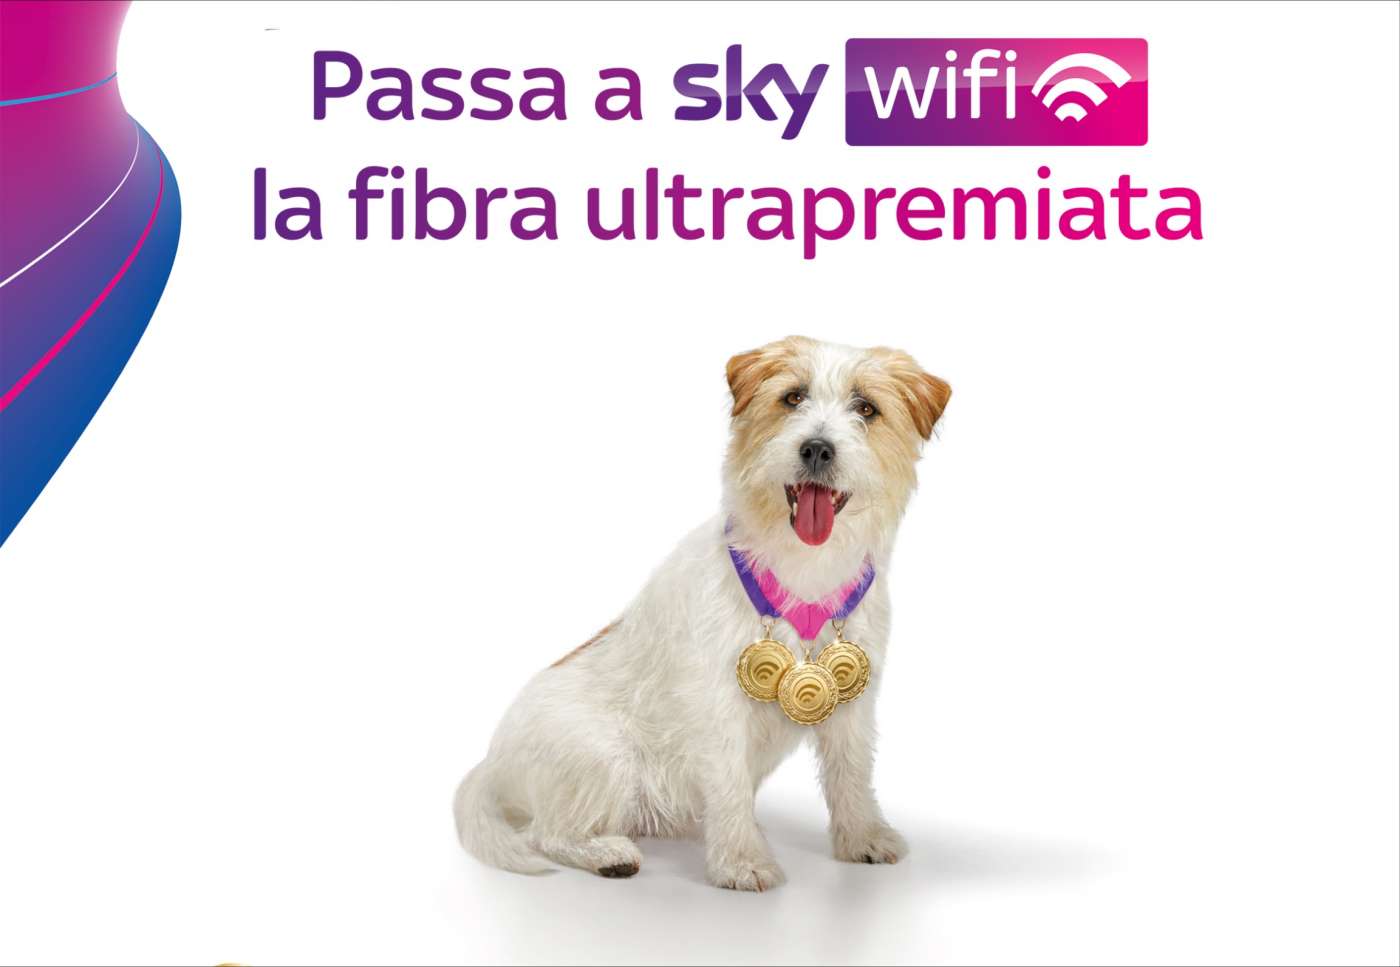 La nuova campagna di Sky Wifi, la fibra ultrapremiata dai consumatori